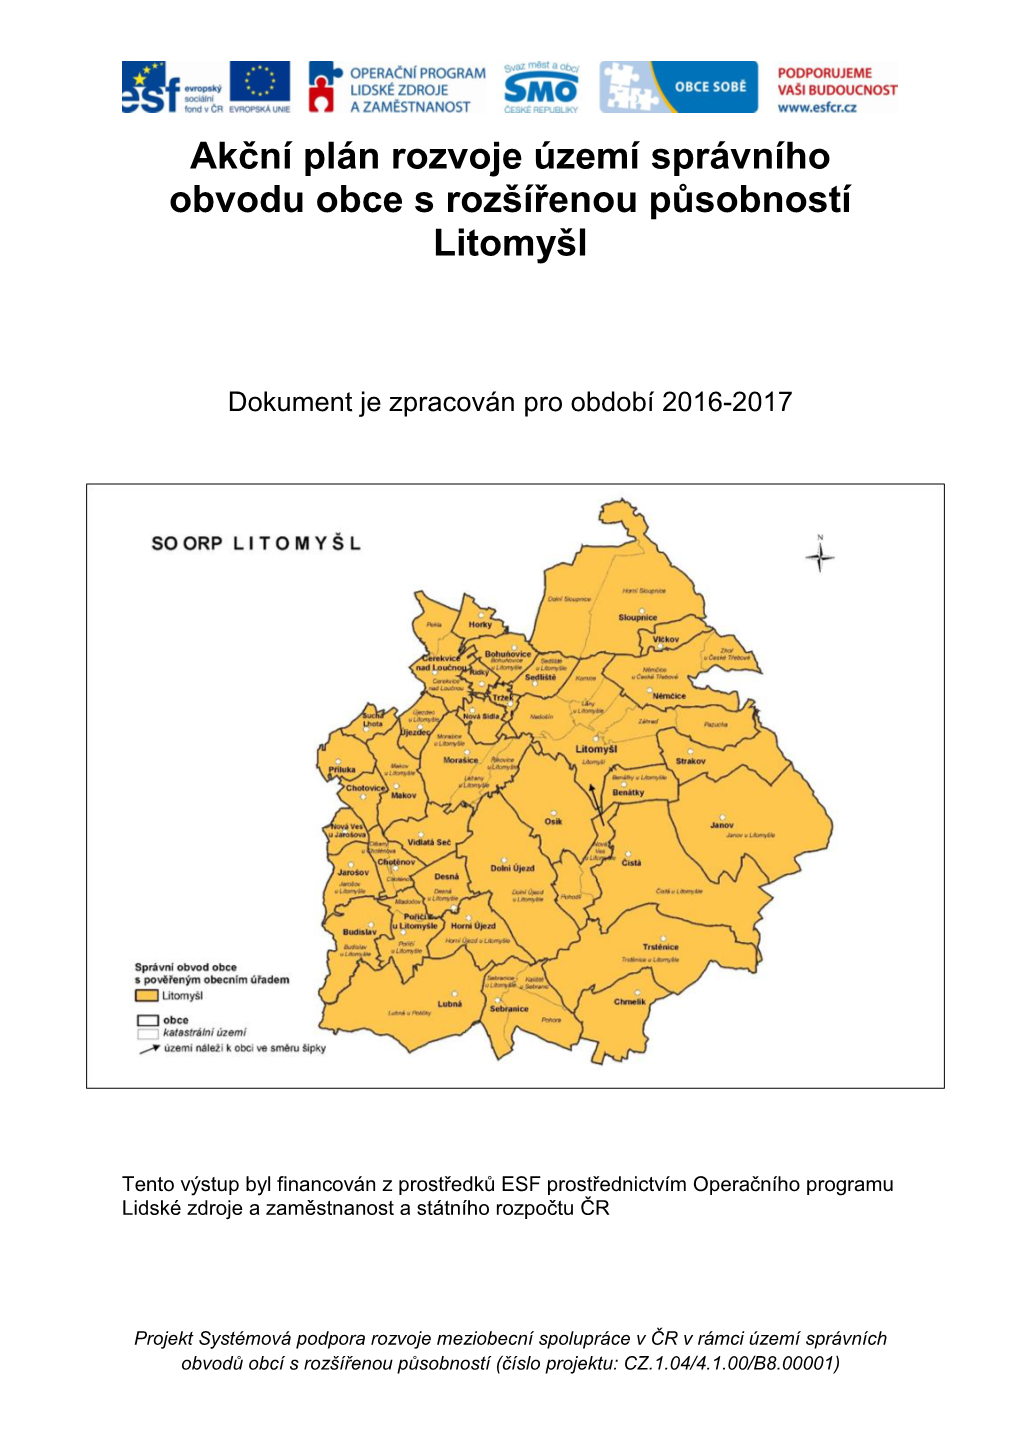 Akční Plán Rozvoje Území Správního Obvodu Obce S Rozšířenou Působností Litomyšl